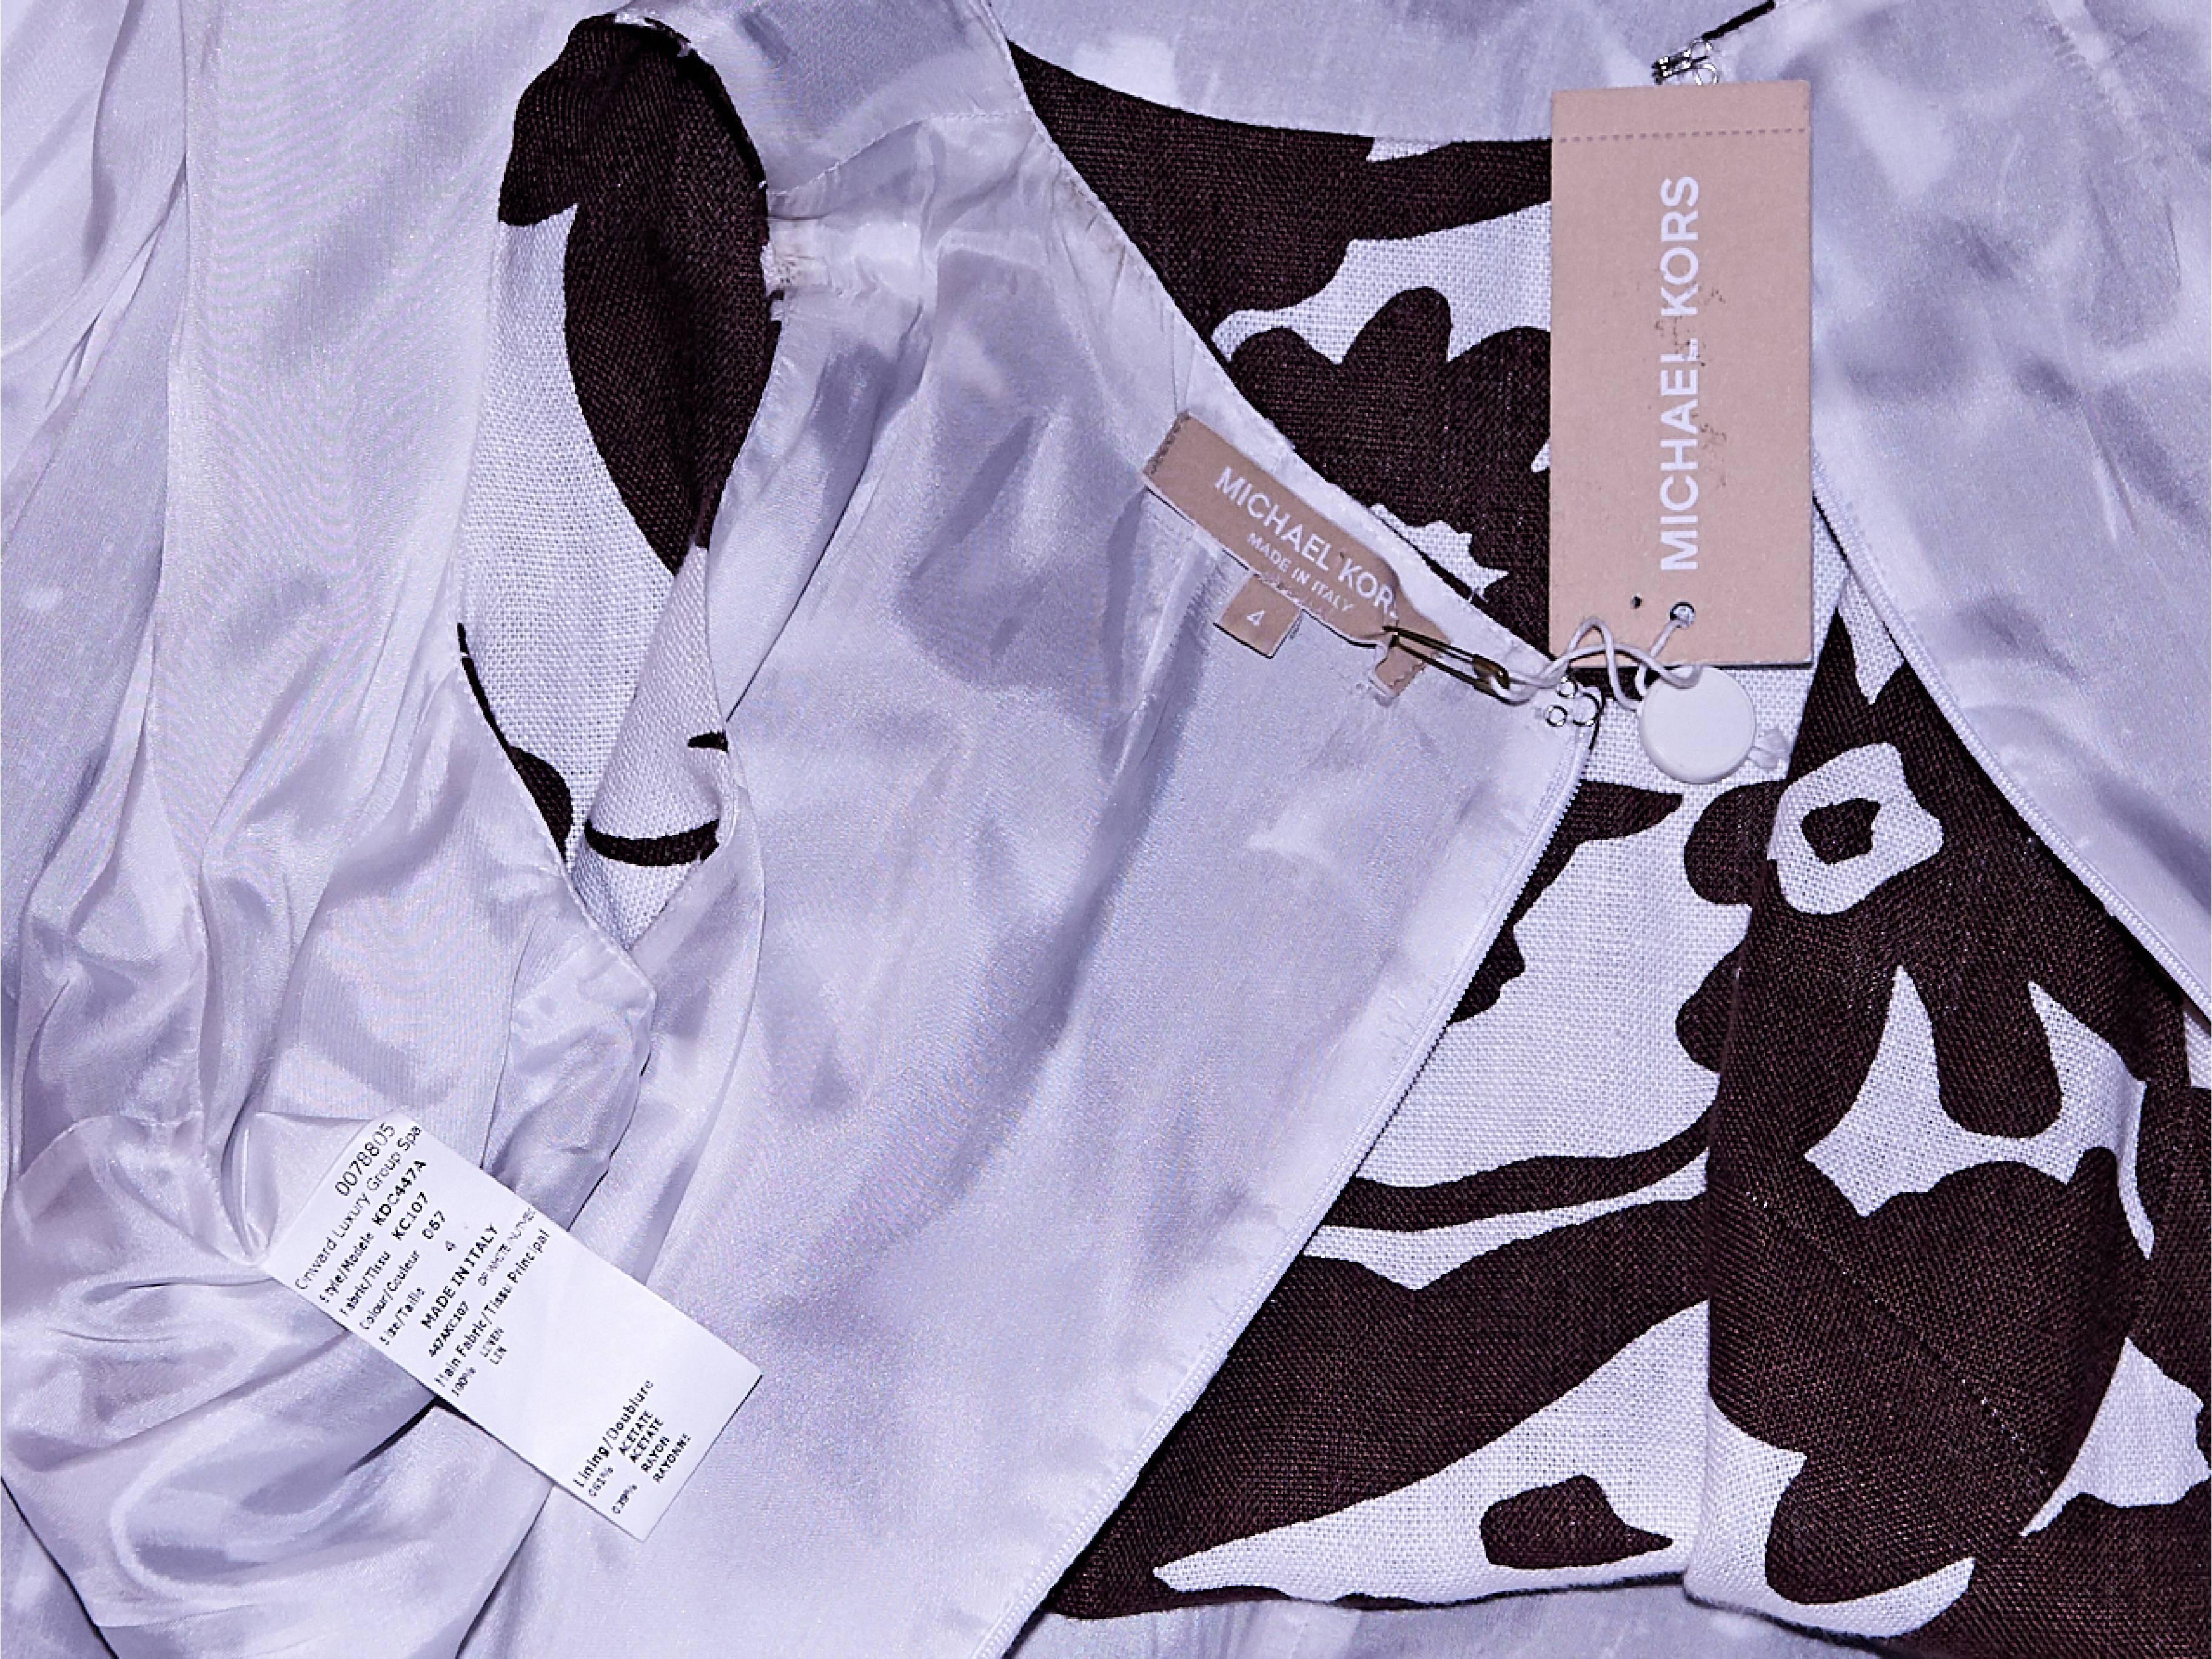 Black Brown & White Michael Kors Floral Sheath Dress